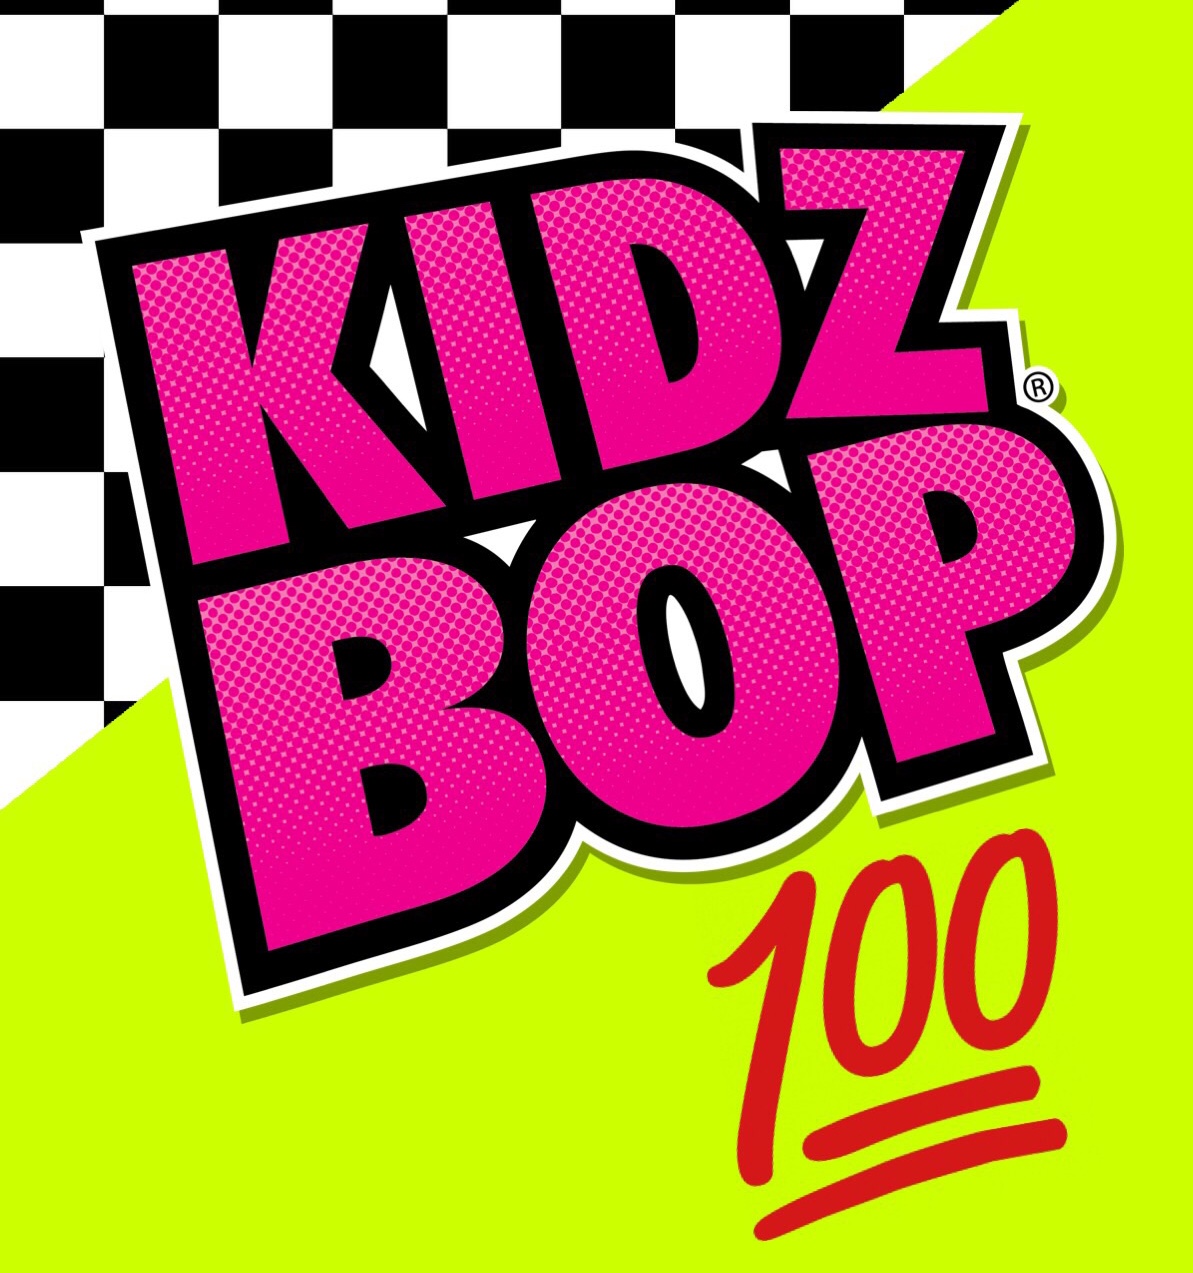 Kidz 100 (Rap) | Kidz Bop Wiki | Fandom